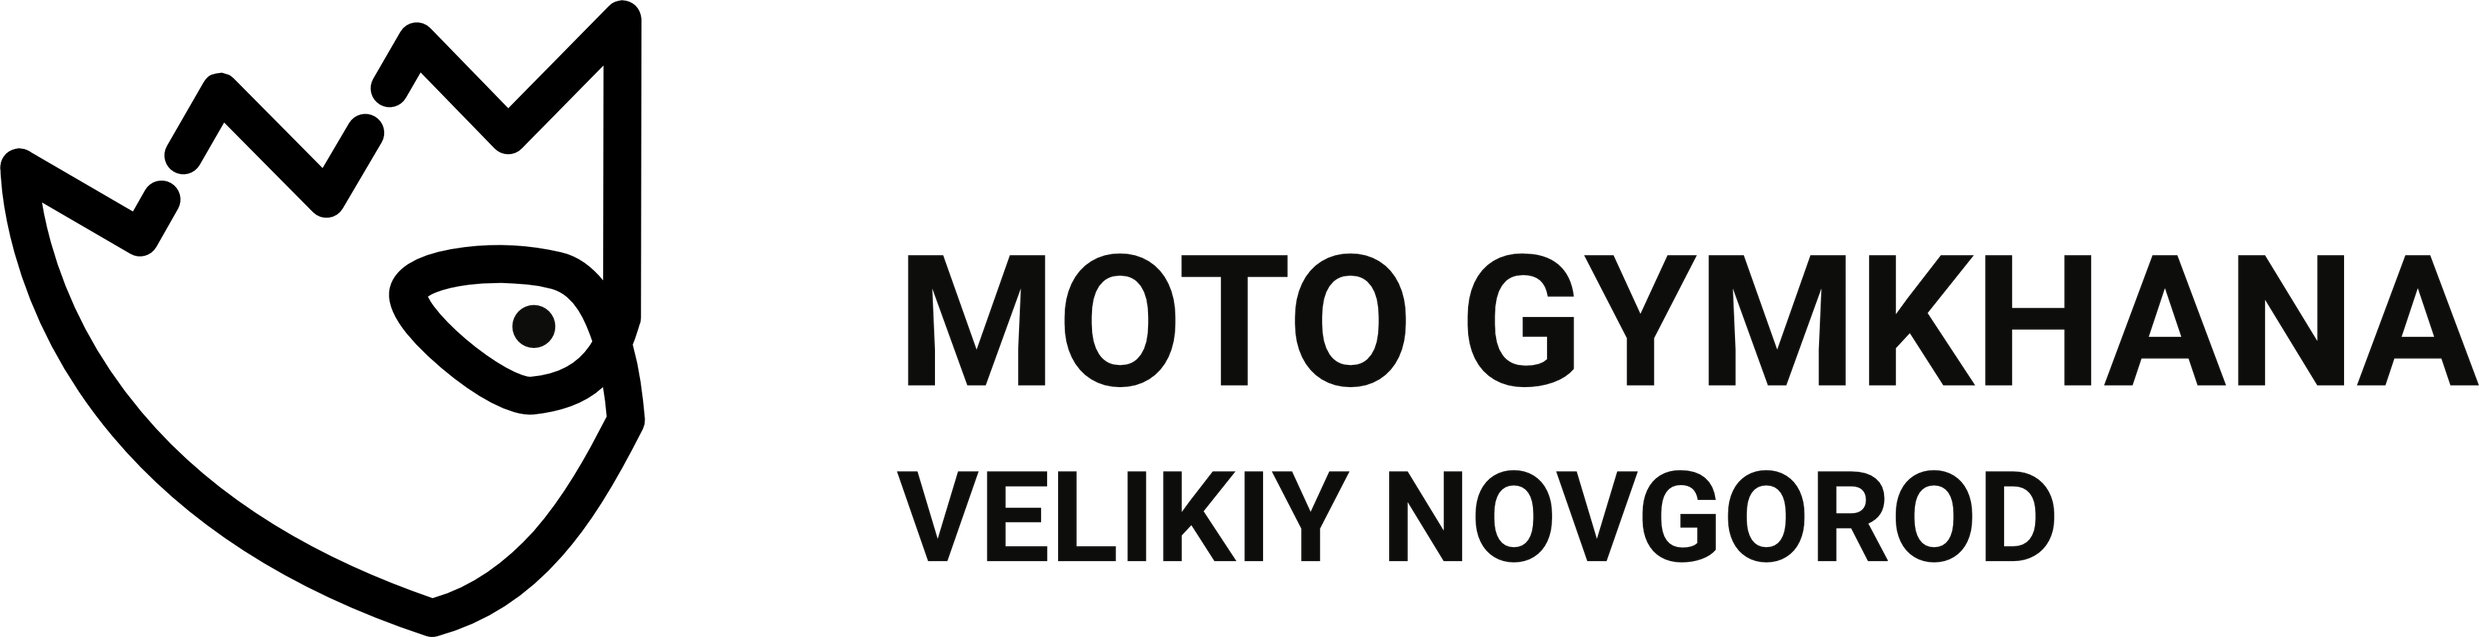 Логотип мотоджимхана-клуба